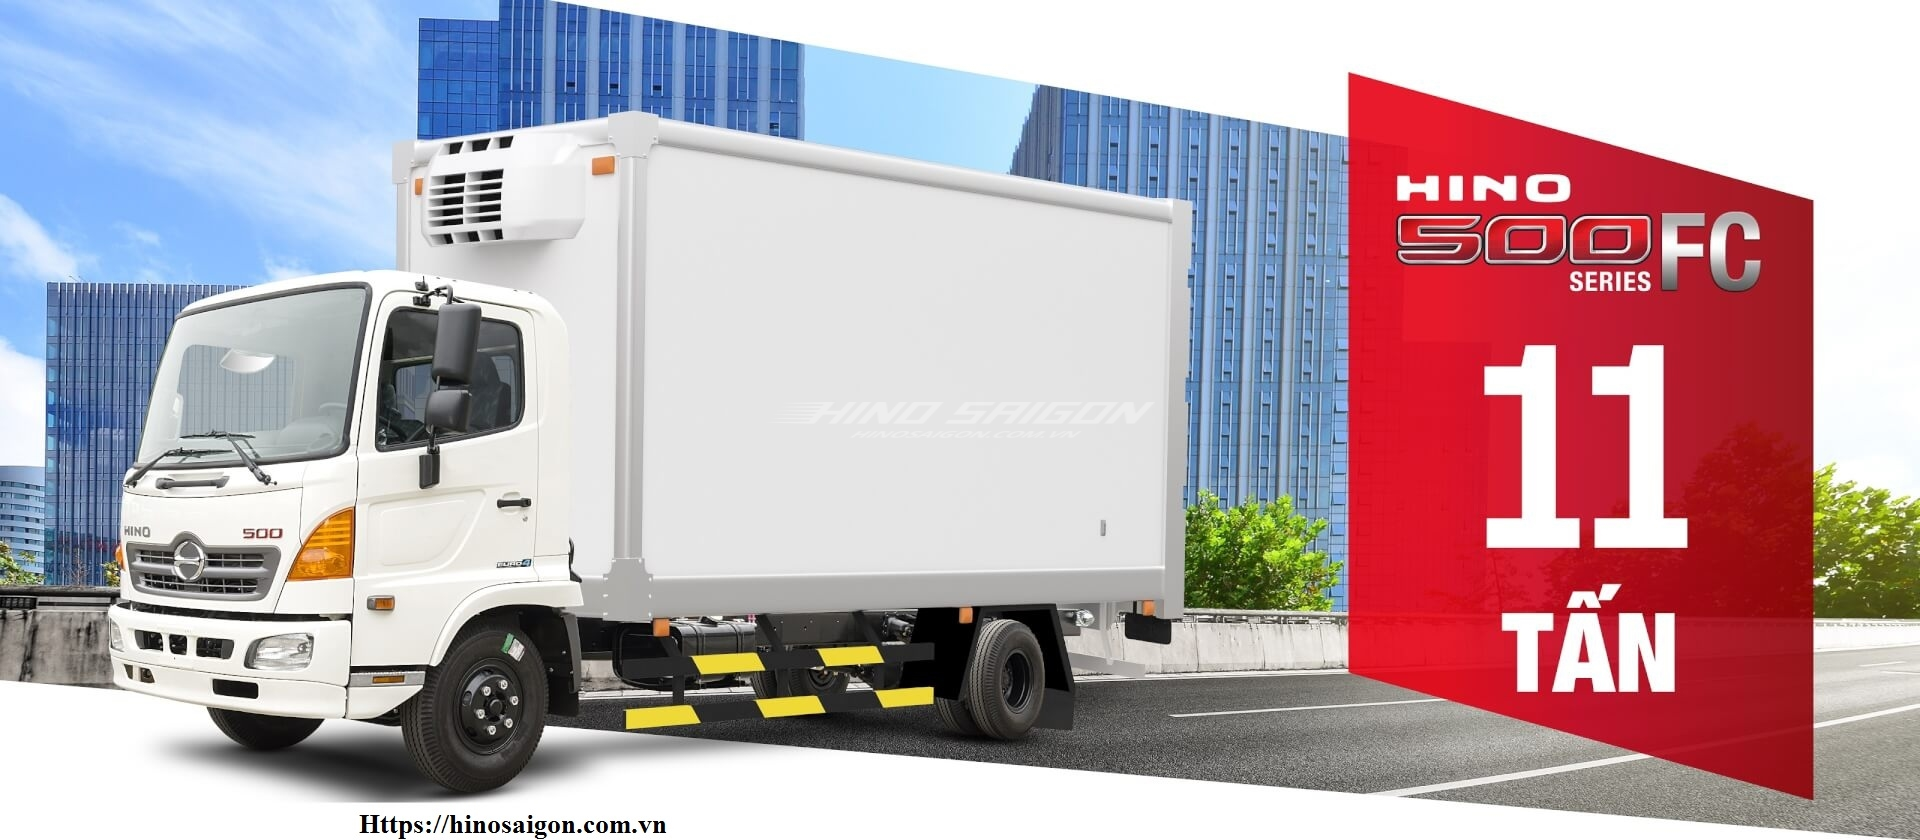 Hino chính thức ra mắt xe tải FC series 500 tổng trọng tải 11.000 kg